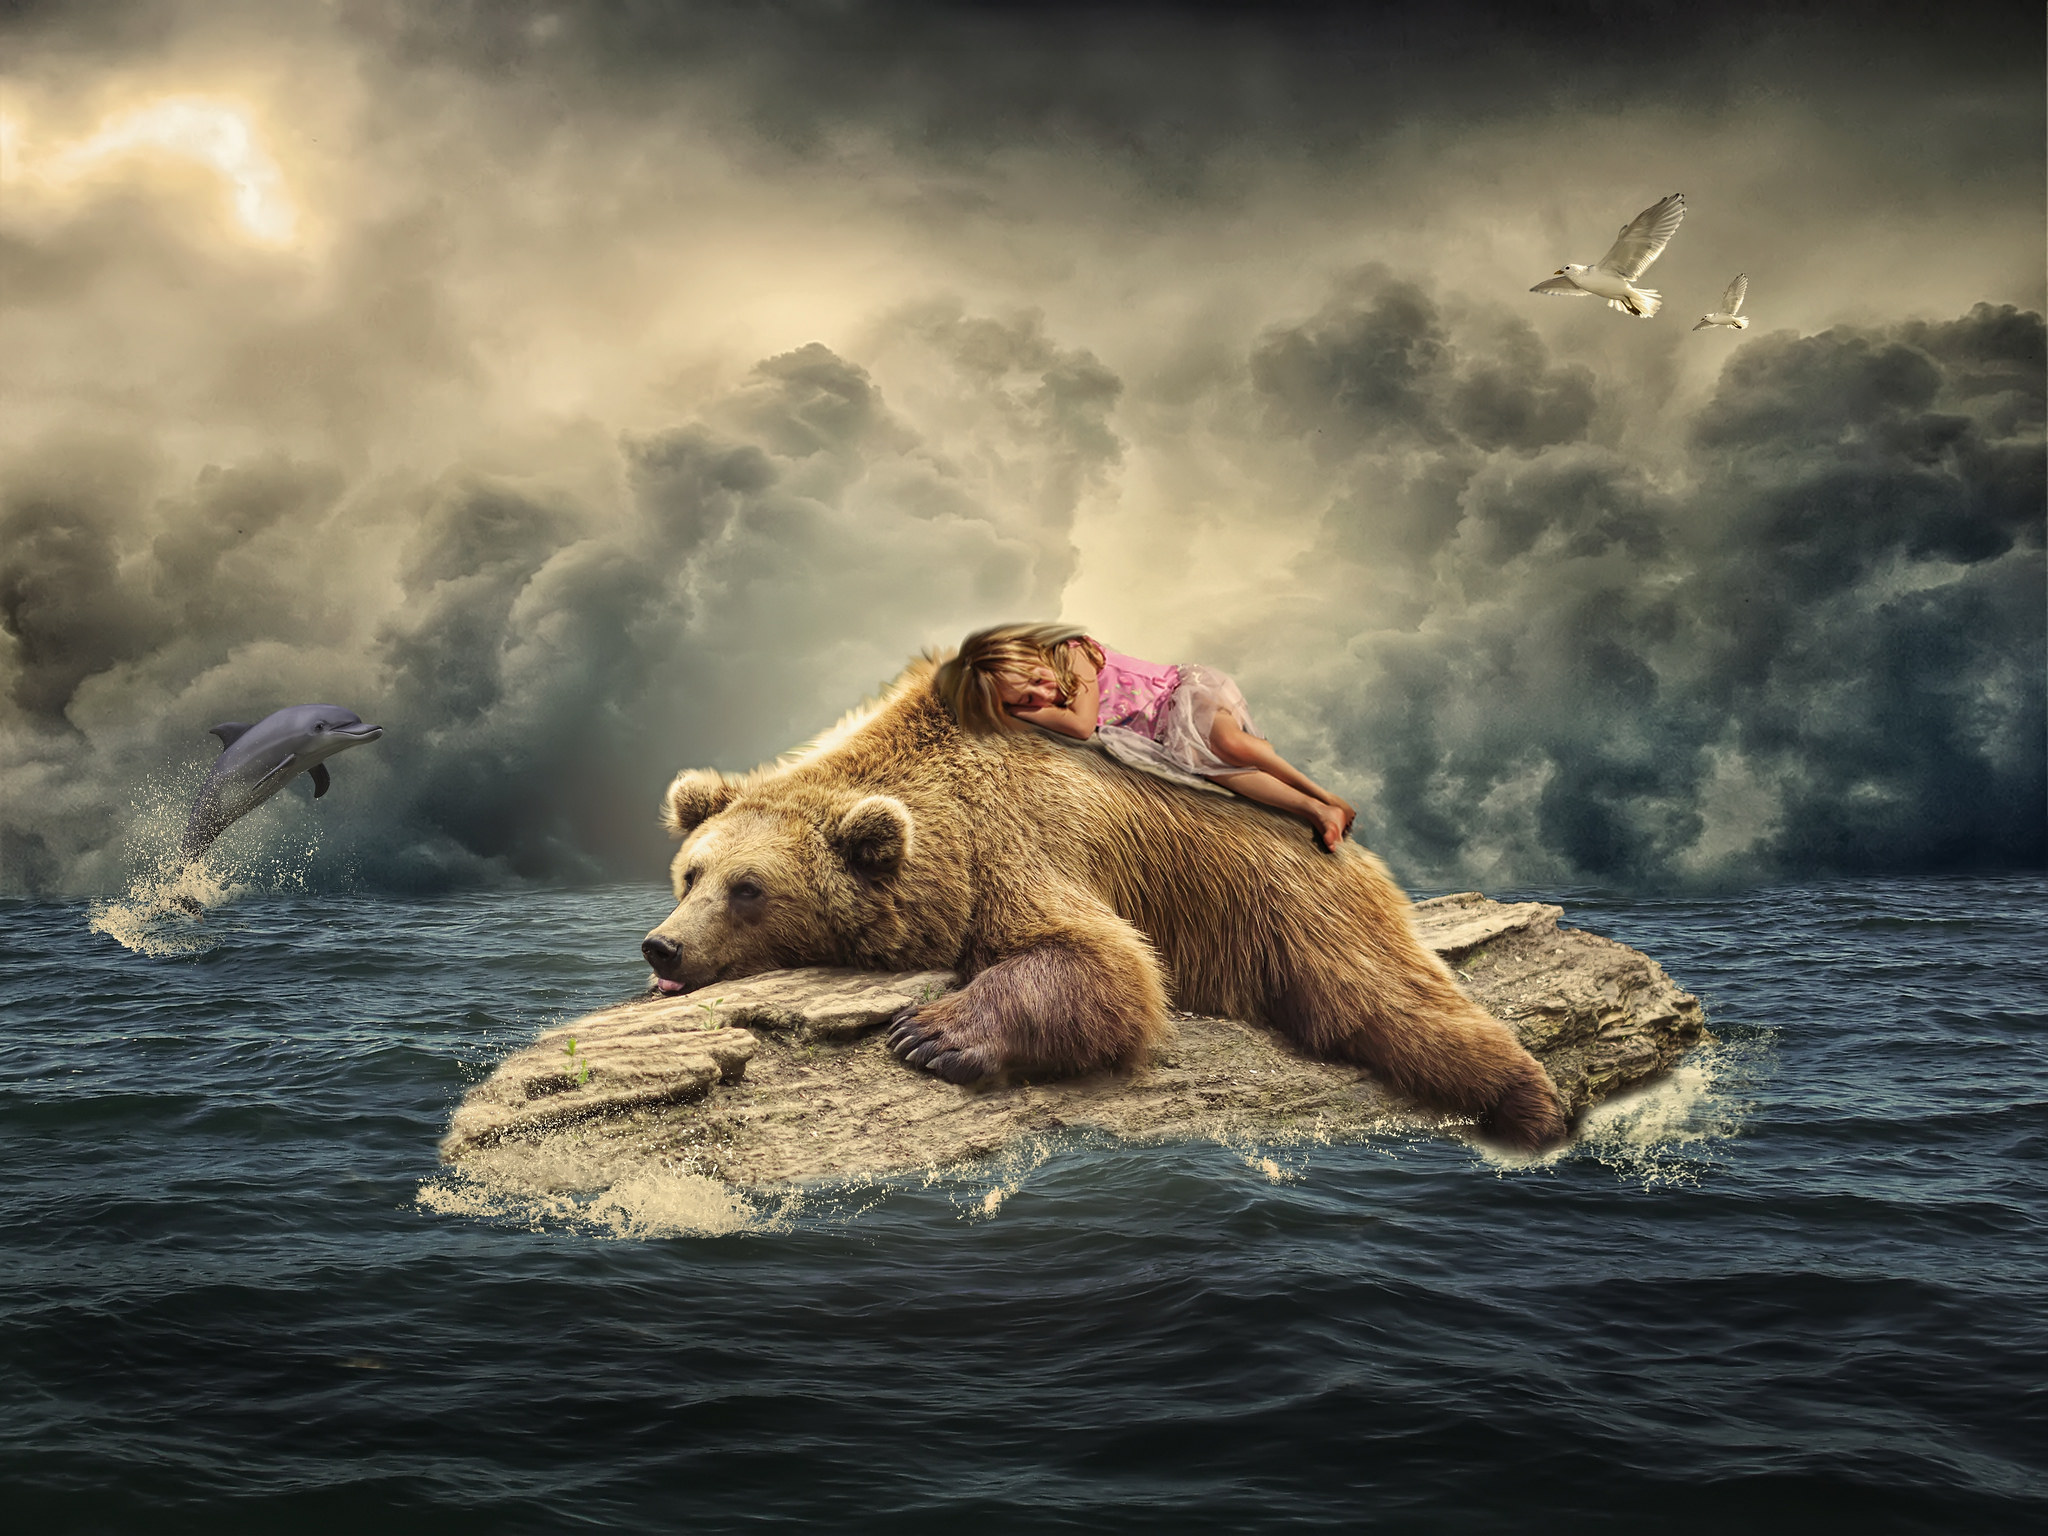 Скачать обои бесплатно Облака, Океан, Медведь, Дельфин, Фотографии, Манипуляции, Малышка картинка на рабочий стол ПК